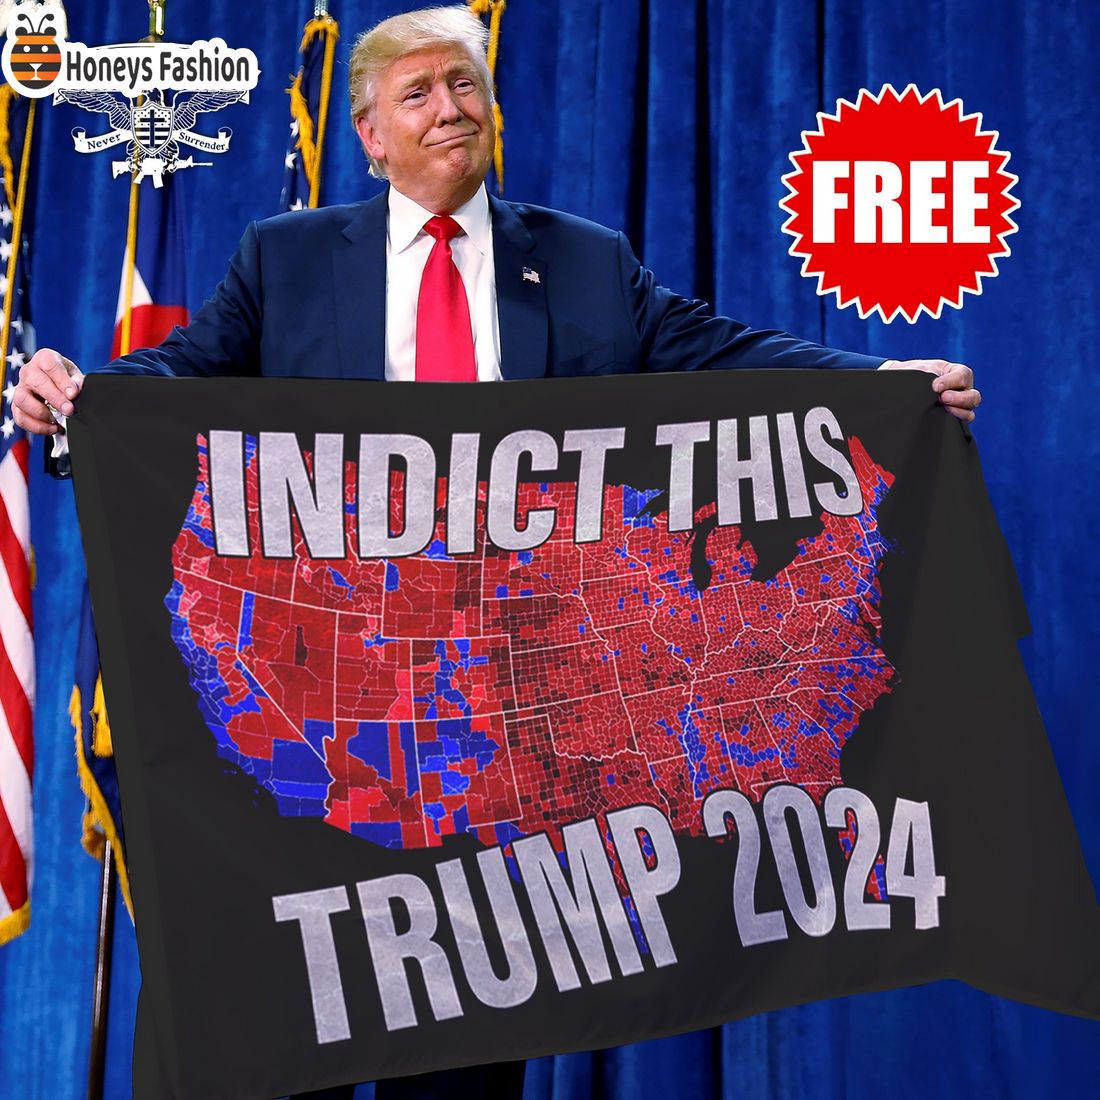 Indic this Trump 2024 flag